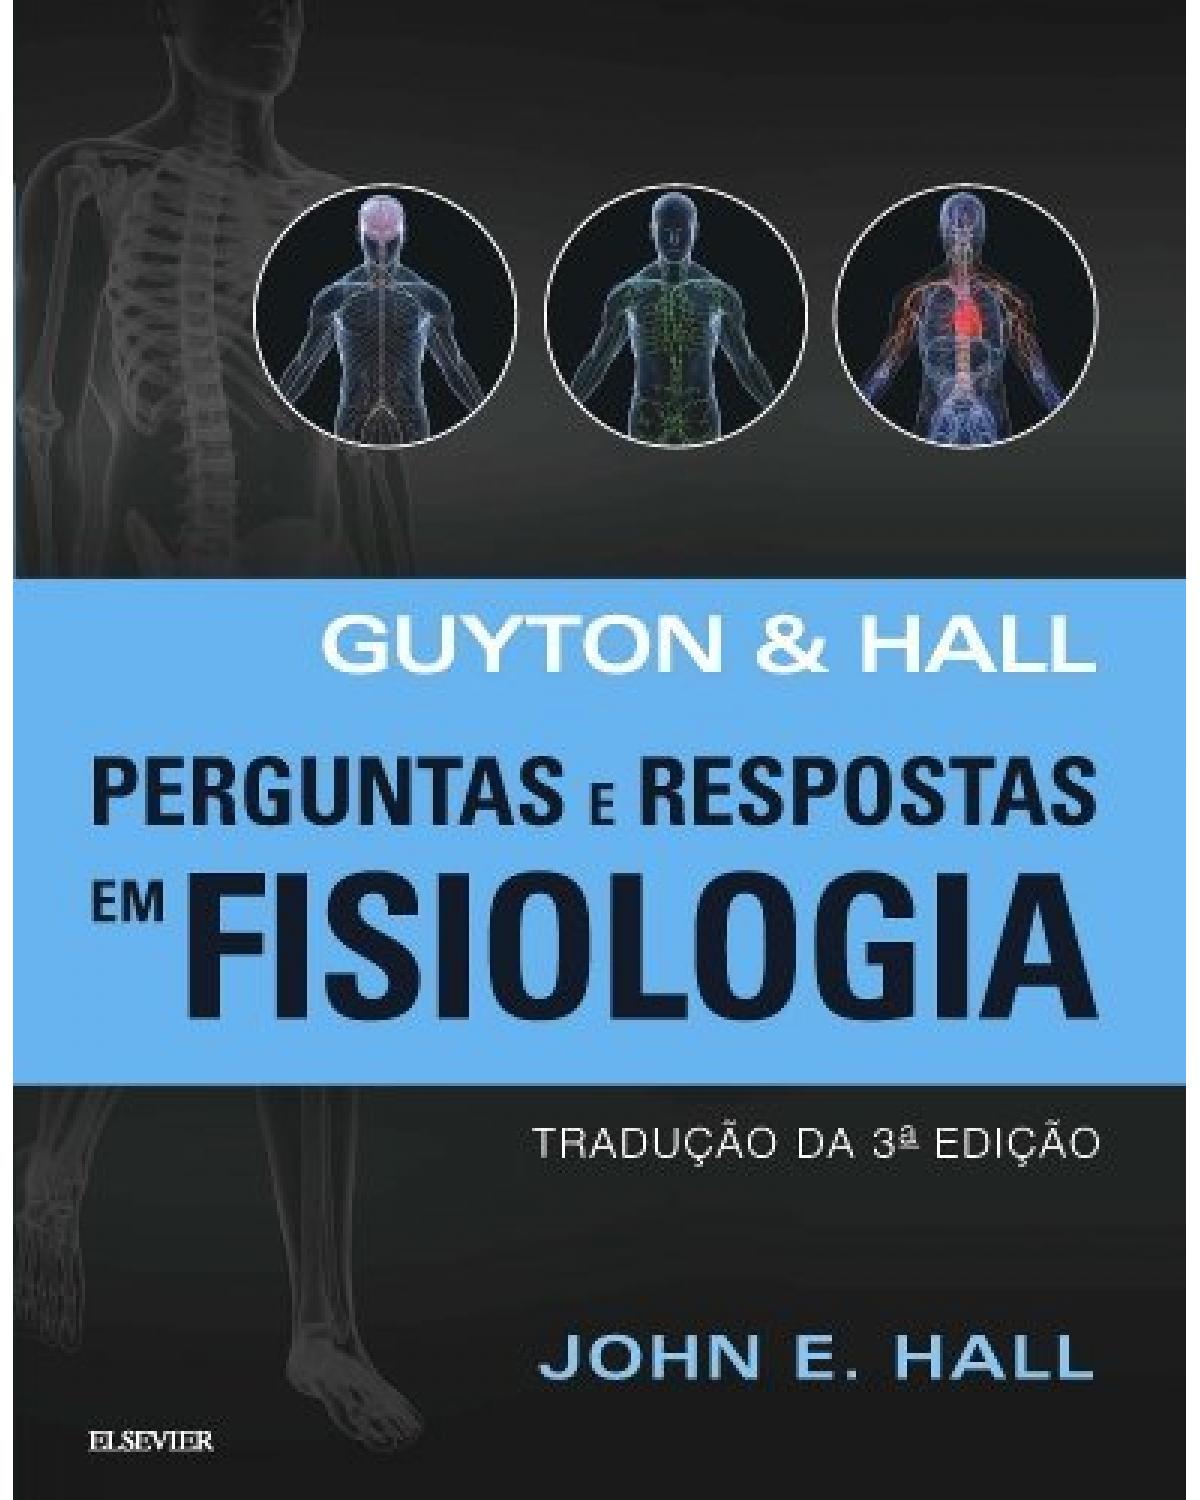 Guyton & Hall - Perguntas e respostas em fisiologia - 3ª Edição | 2017